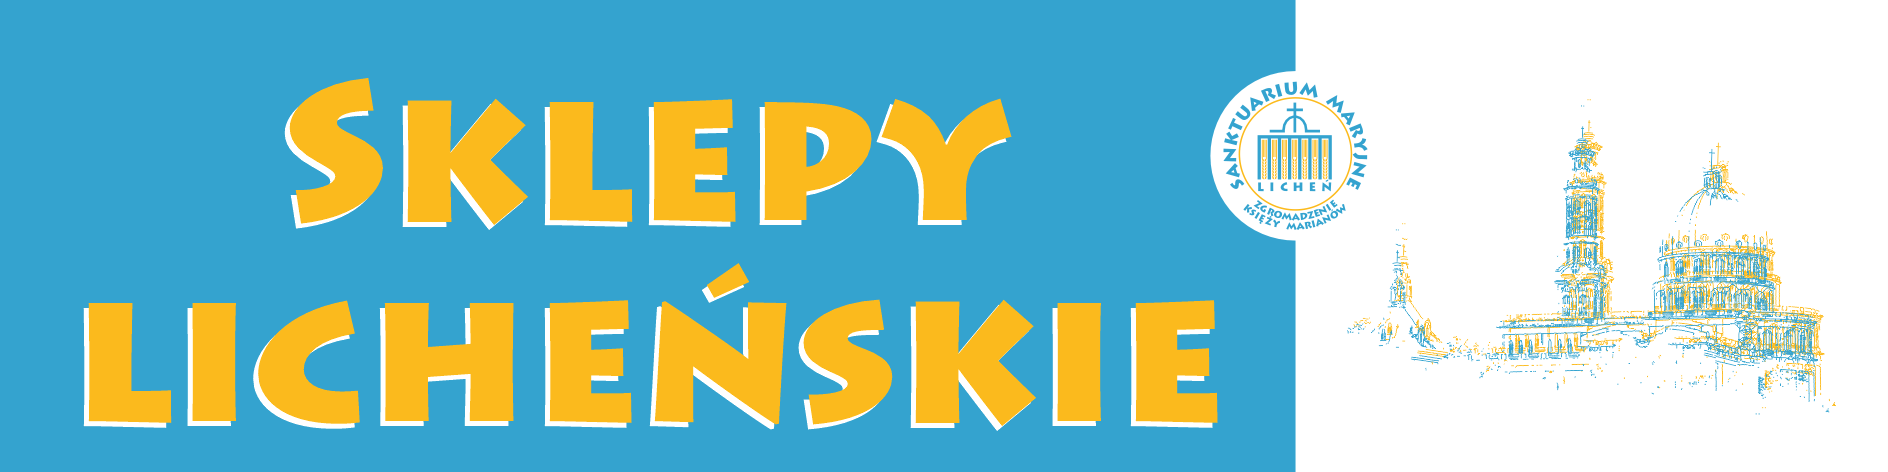 logo_sklepy_lichenskie (002)